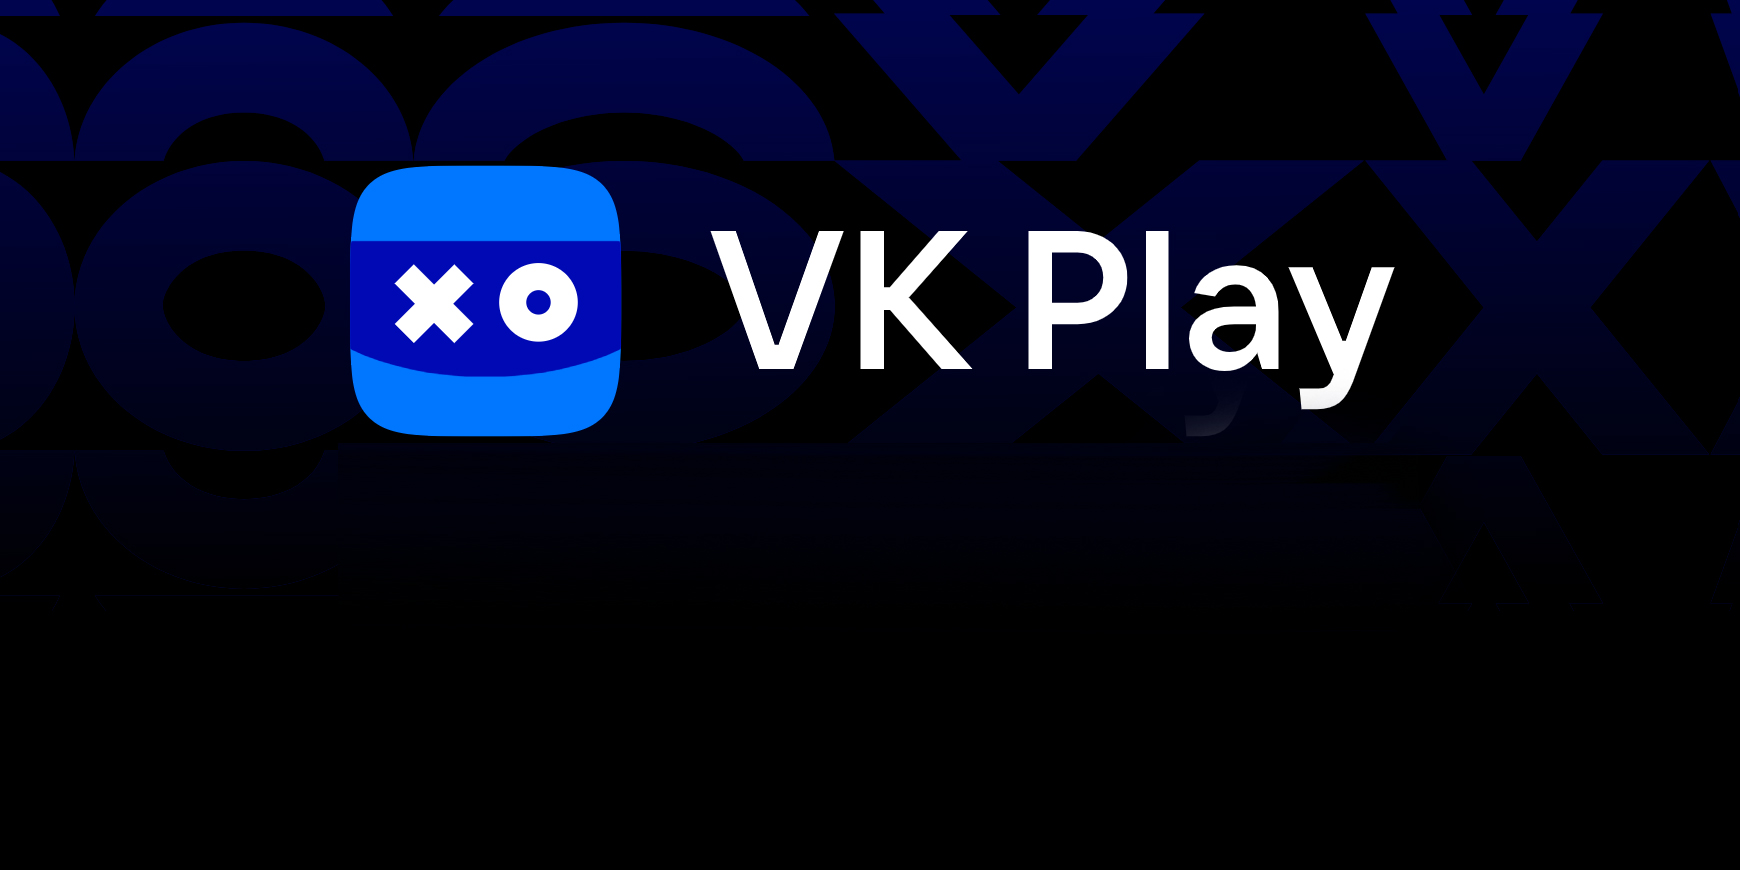 Как связаться с техподдержкой VK Play